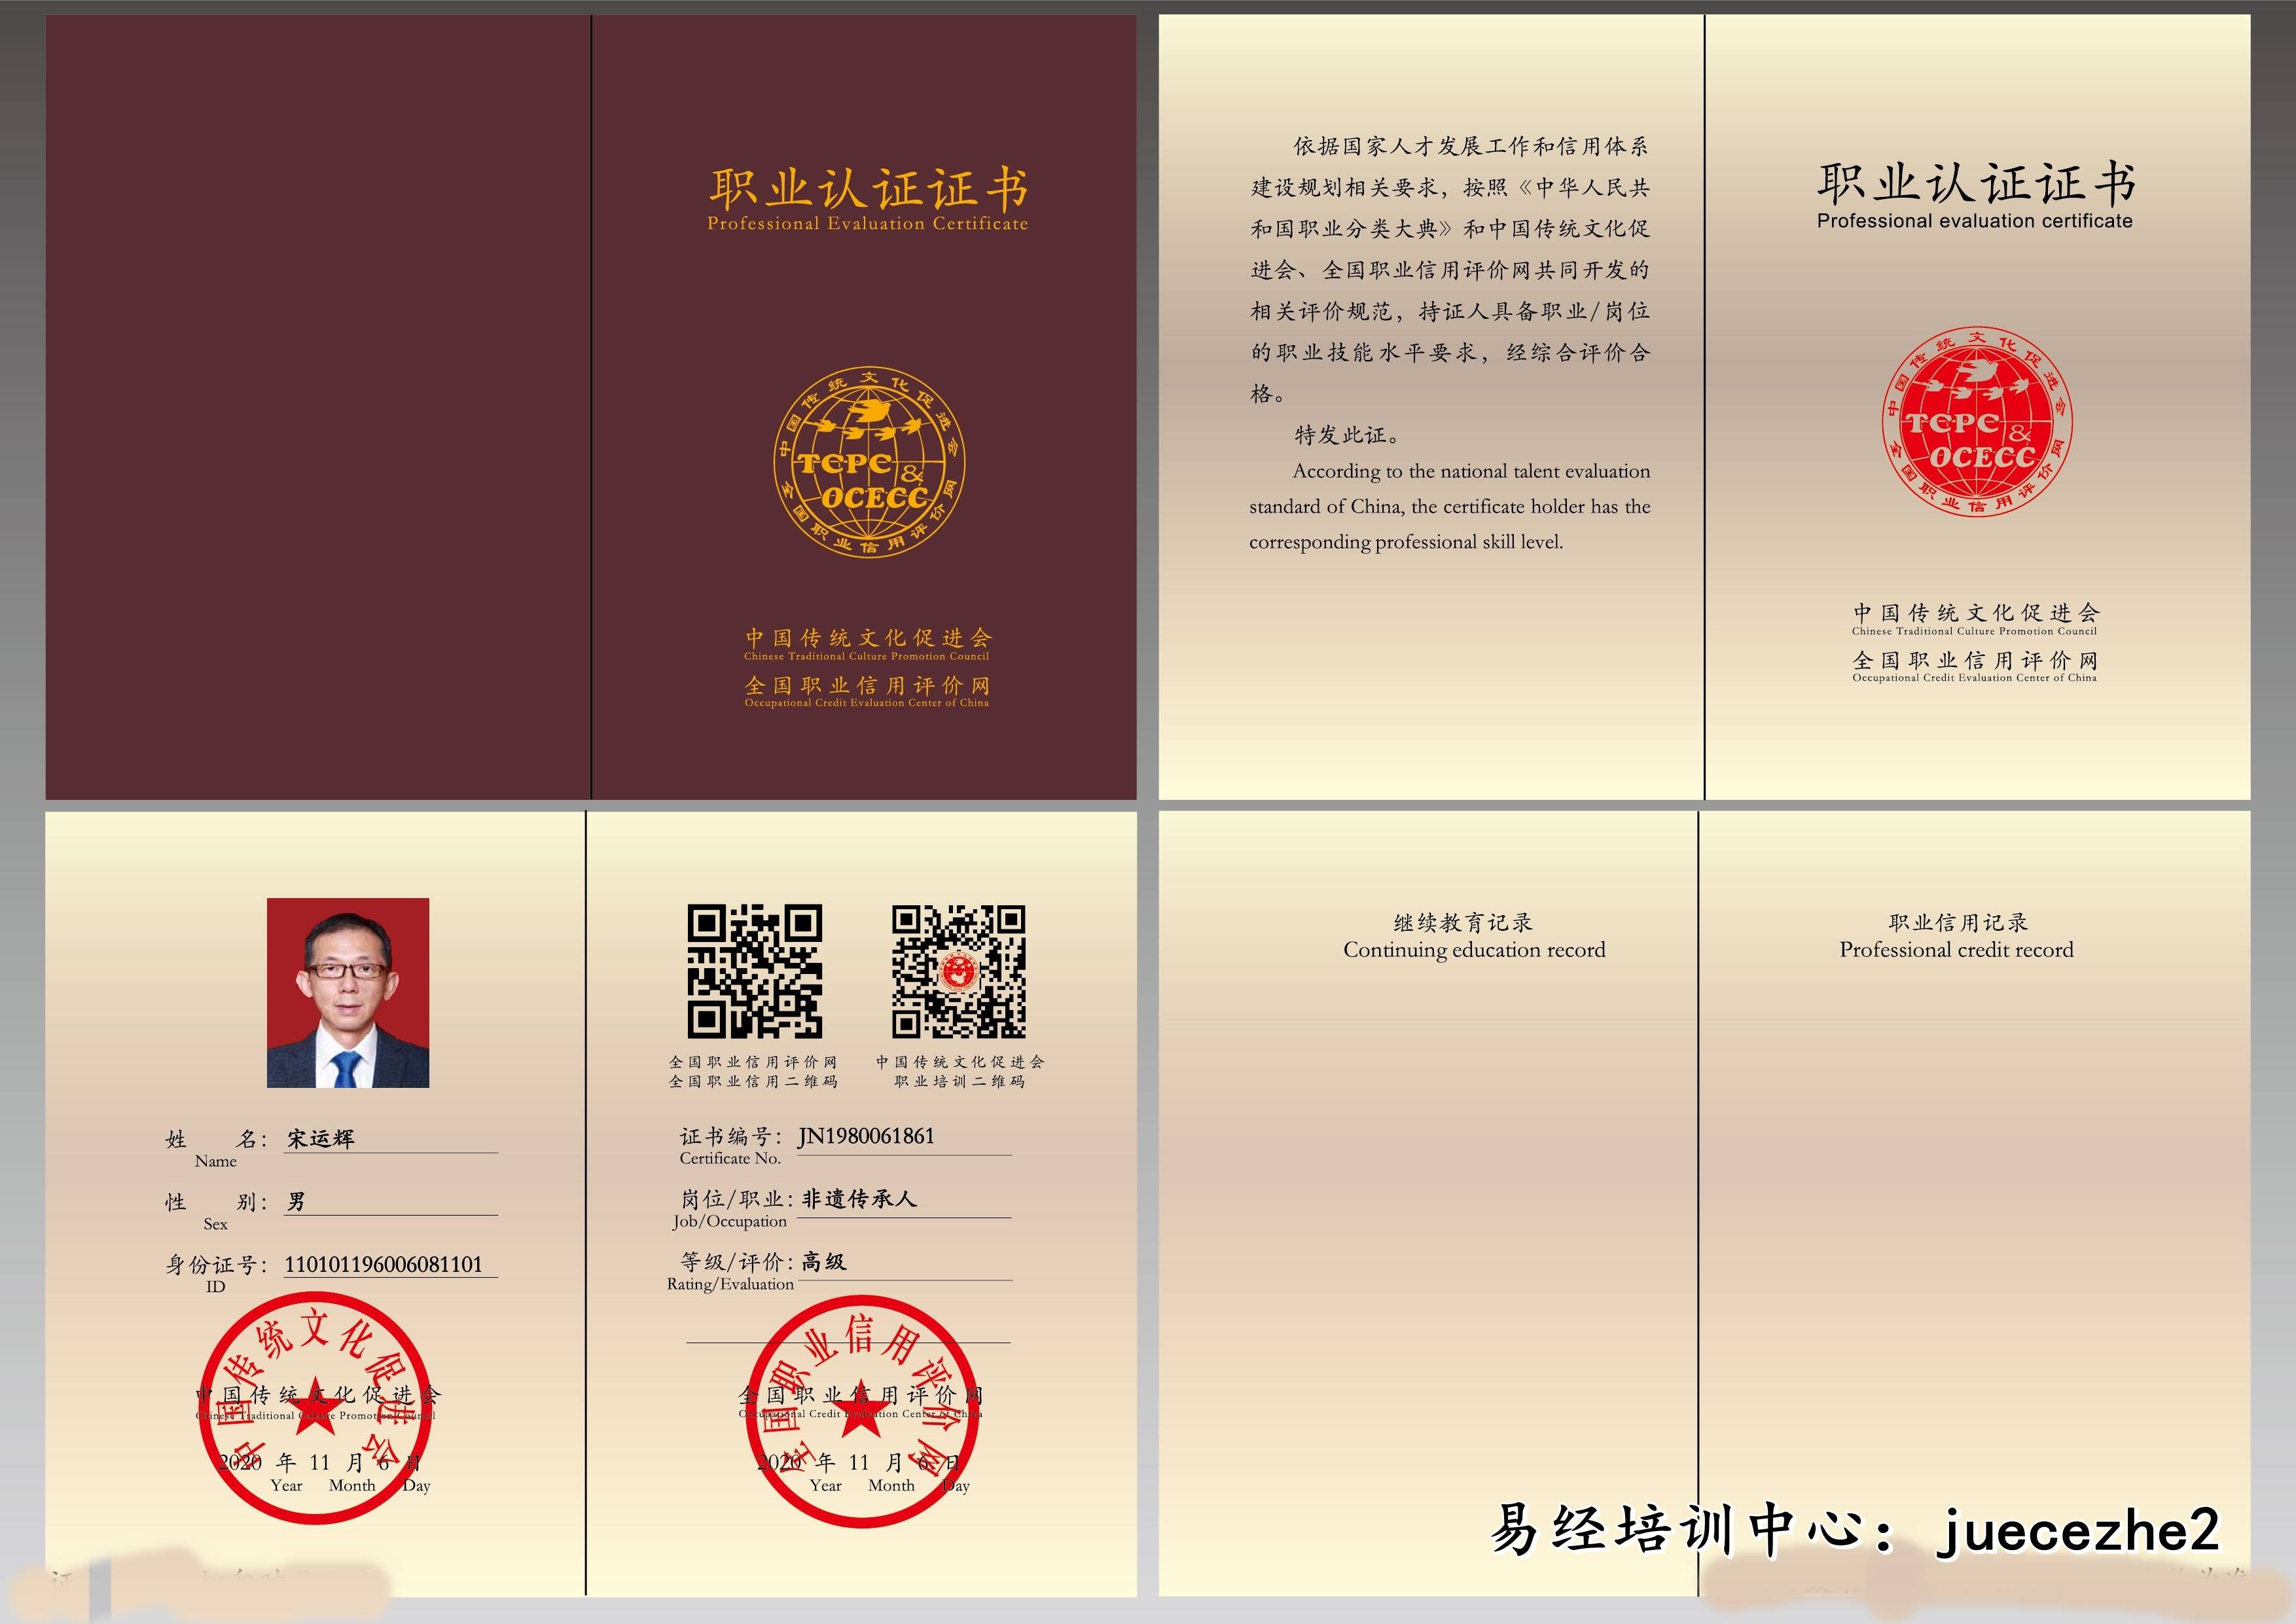 【学业证书】完成规定课程学习,由中国传统文化促进会颁发职业资格